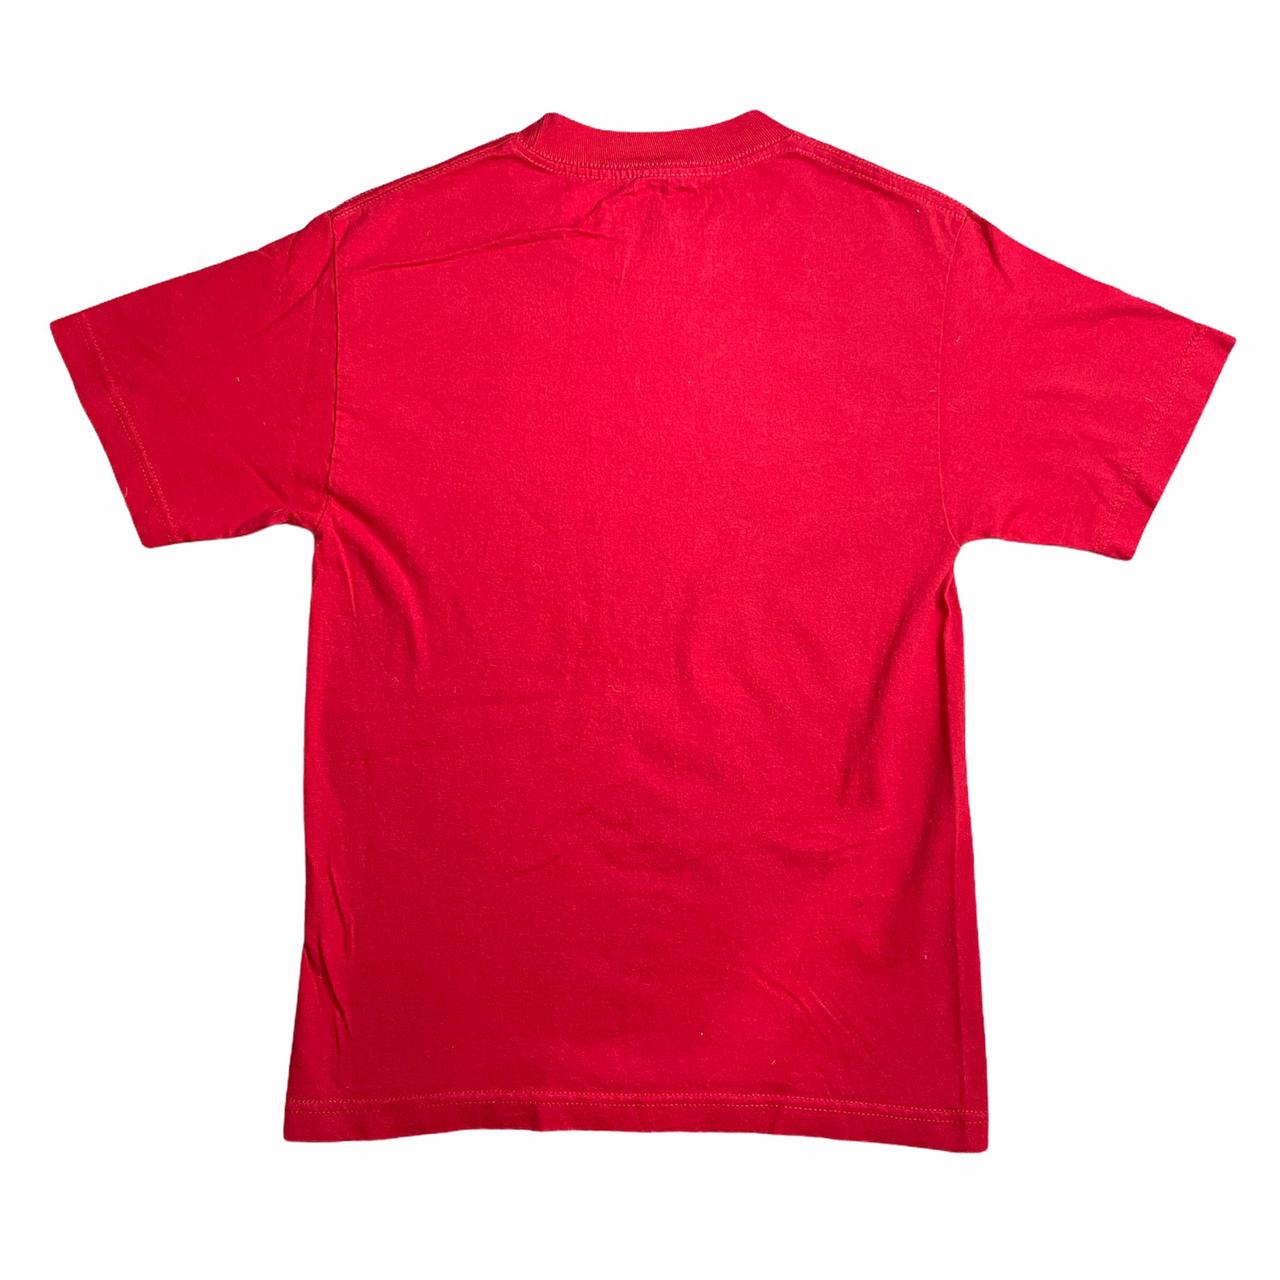 Nike Men's Red T-shirt (4)